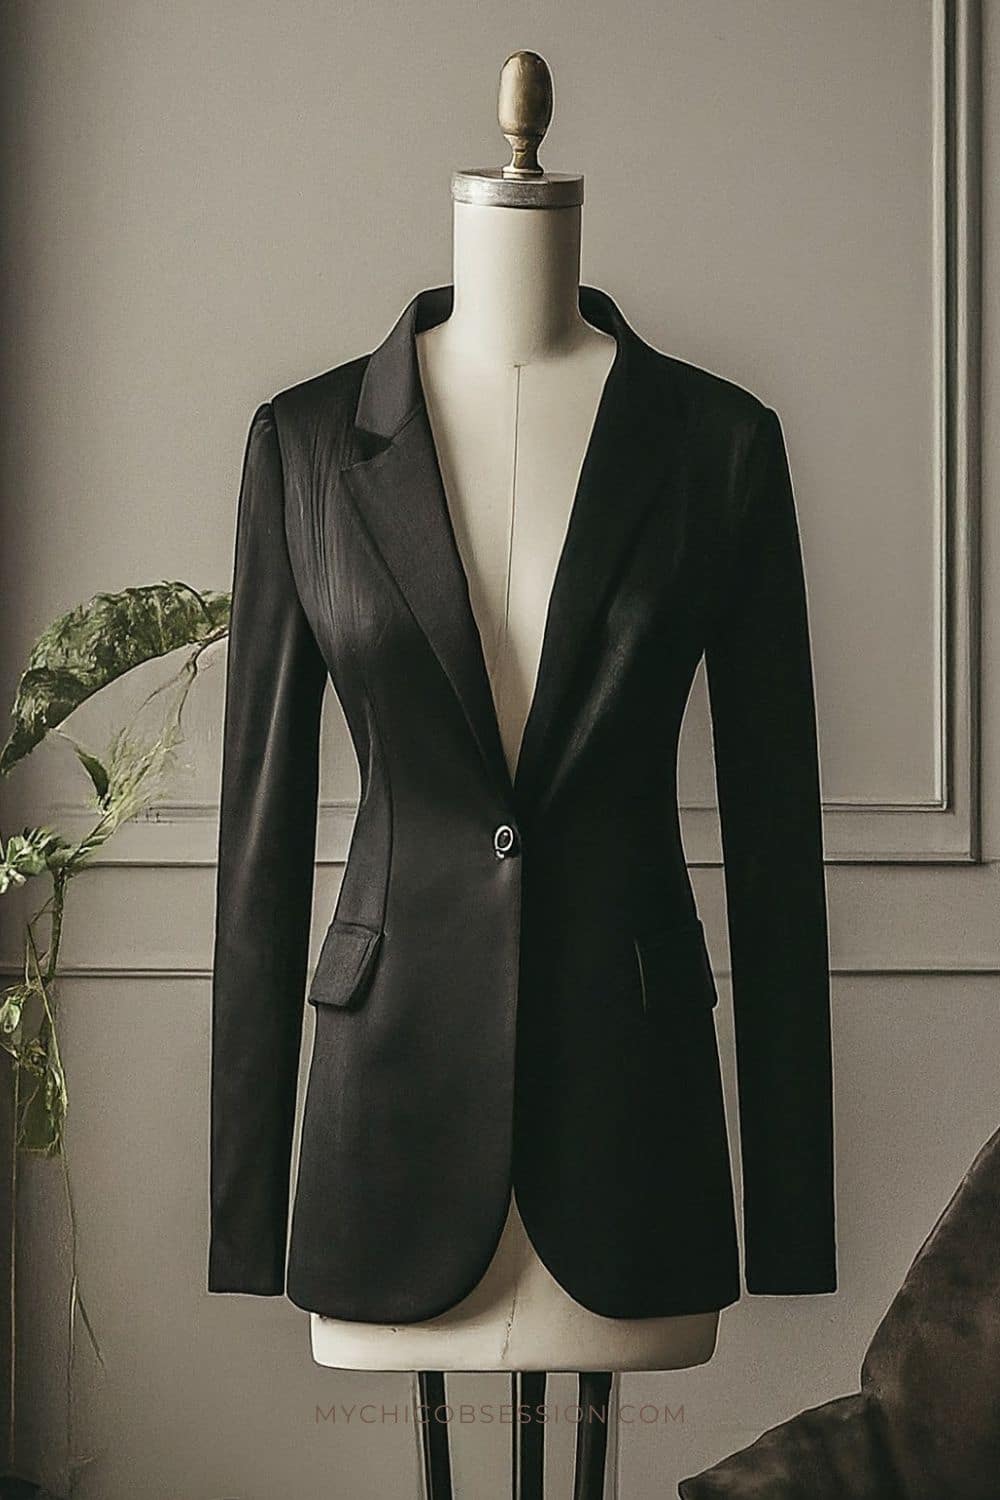 Mannequin wearing black blazer